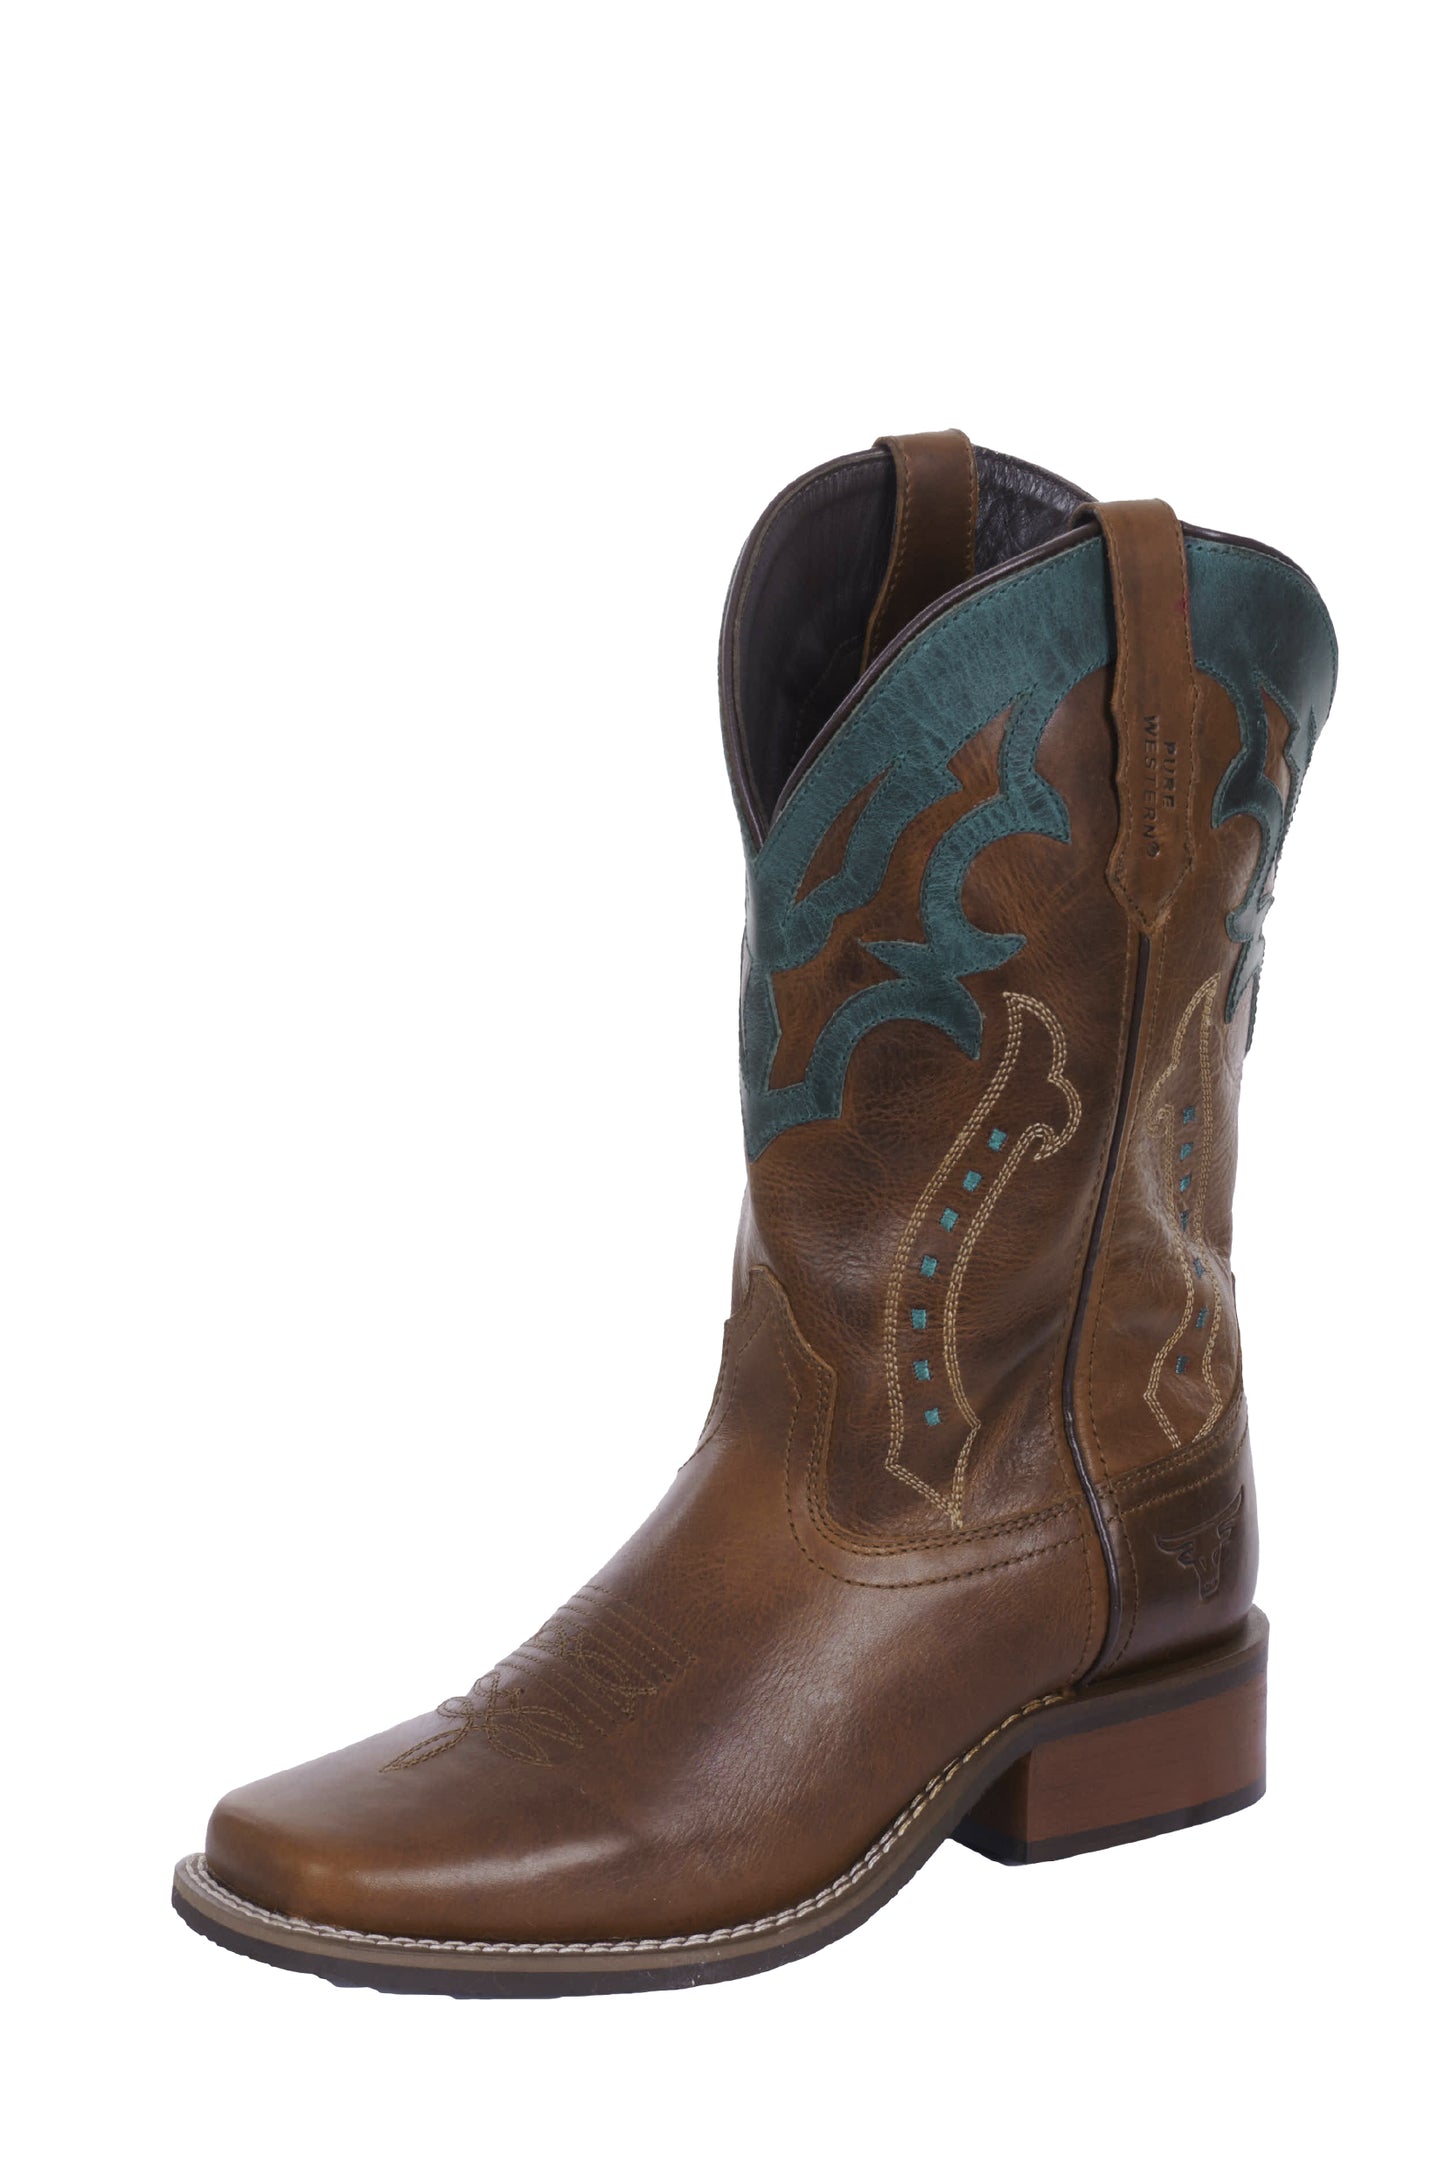 Pure Western Ladies Abilene Boot - Oiled Brown/Dark Teal - P4W28441